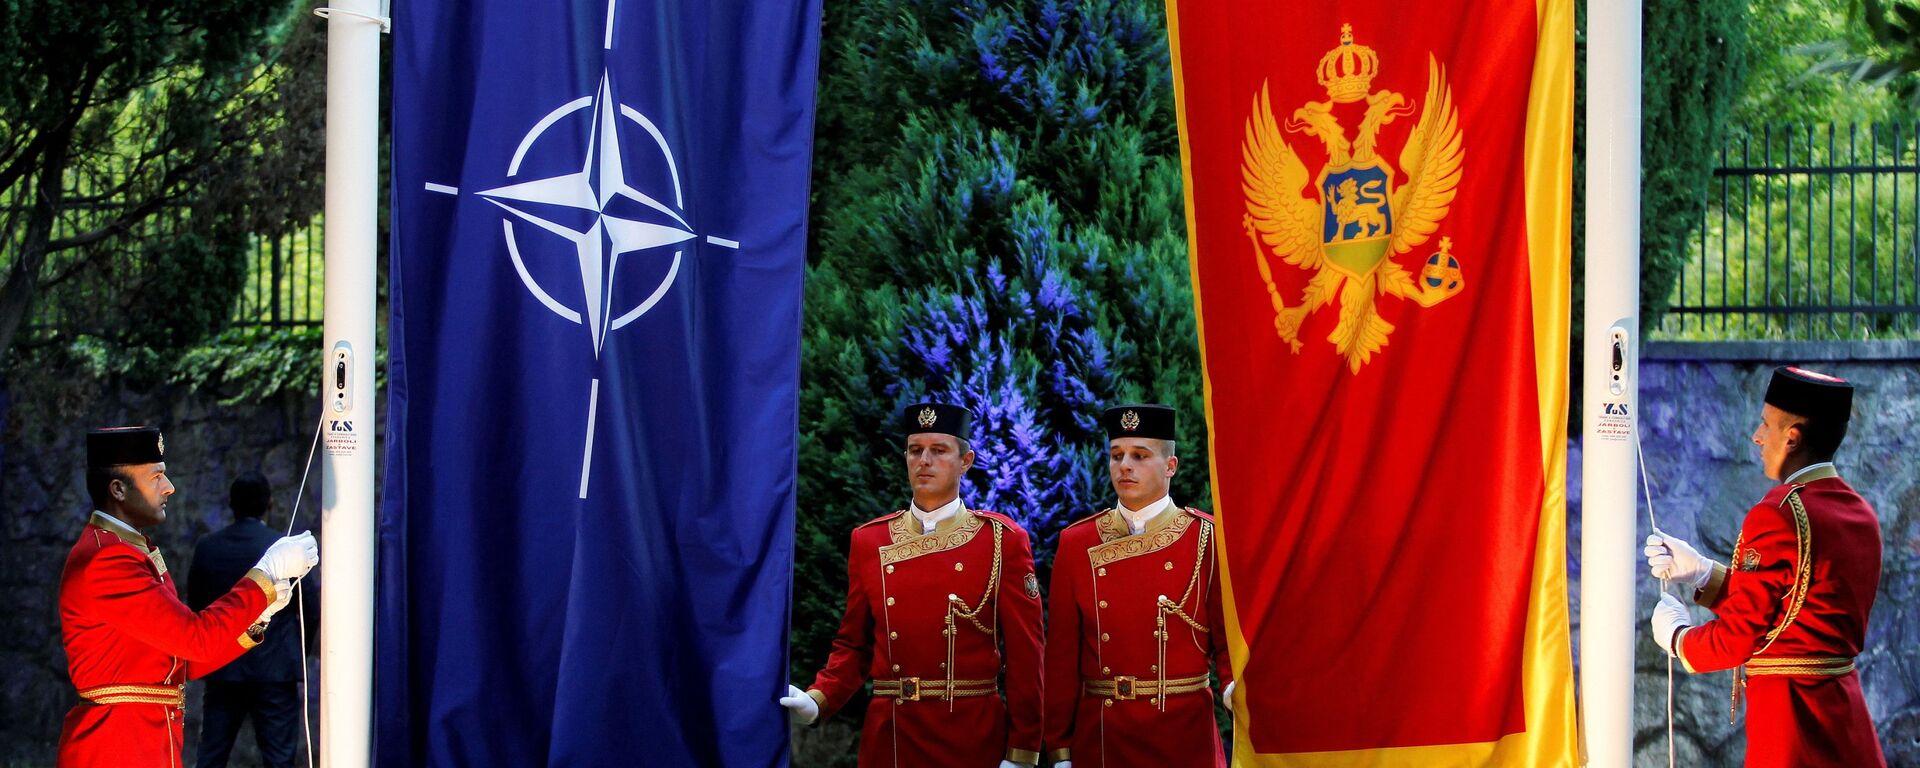 Заставе НАТО и Црне Горе - Sputnik Србија, 1920, 19.07.2021